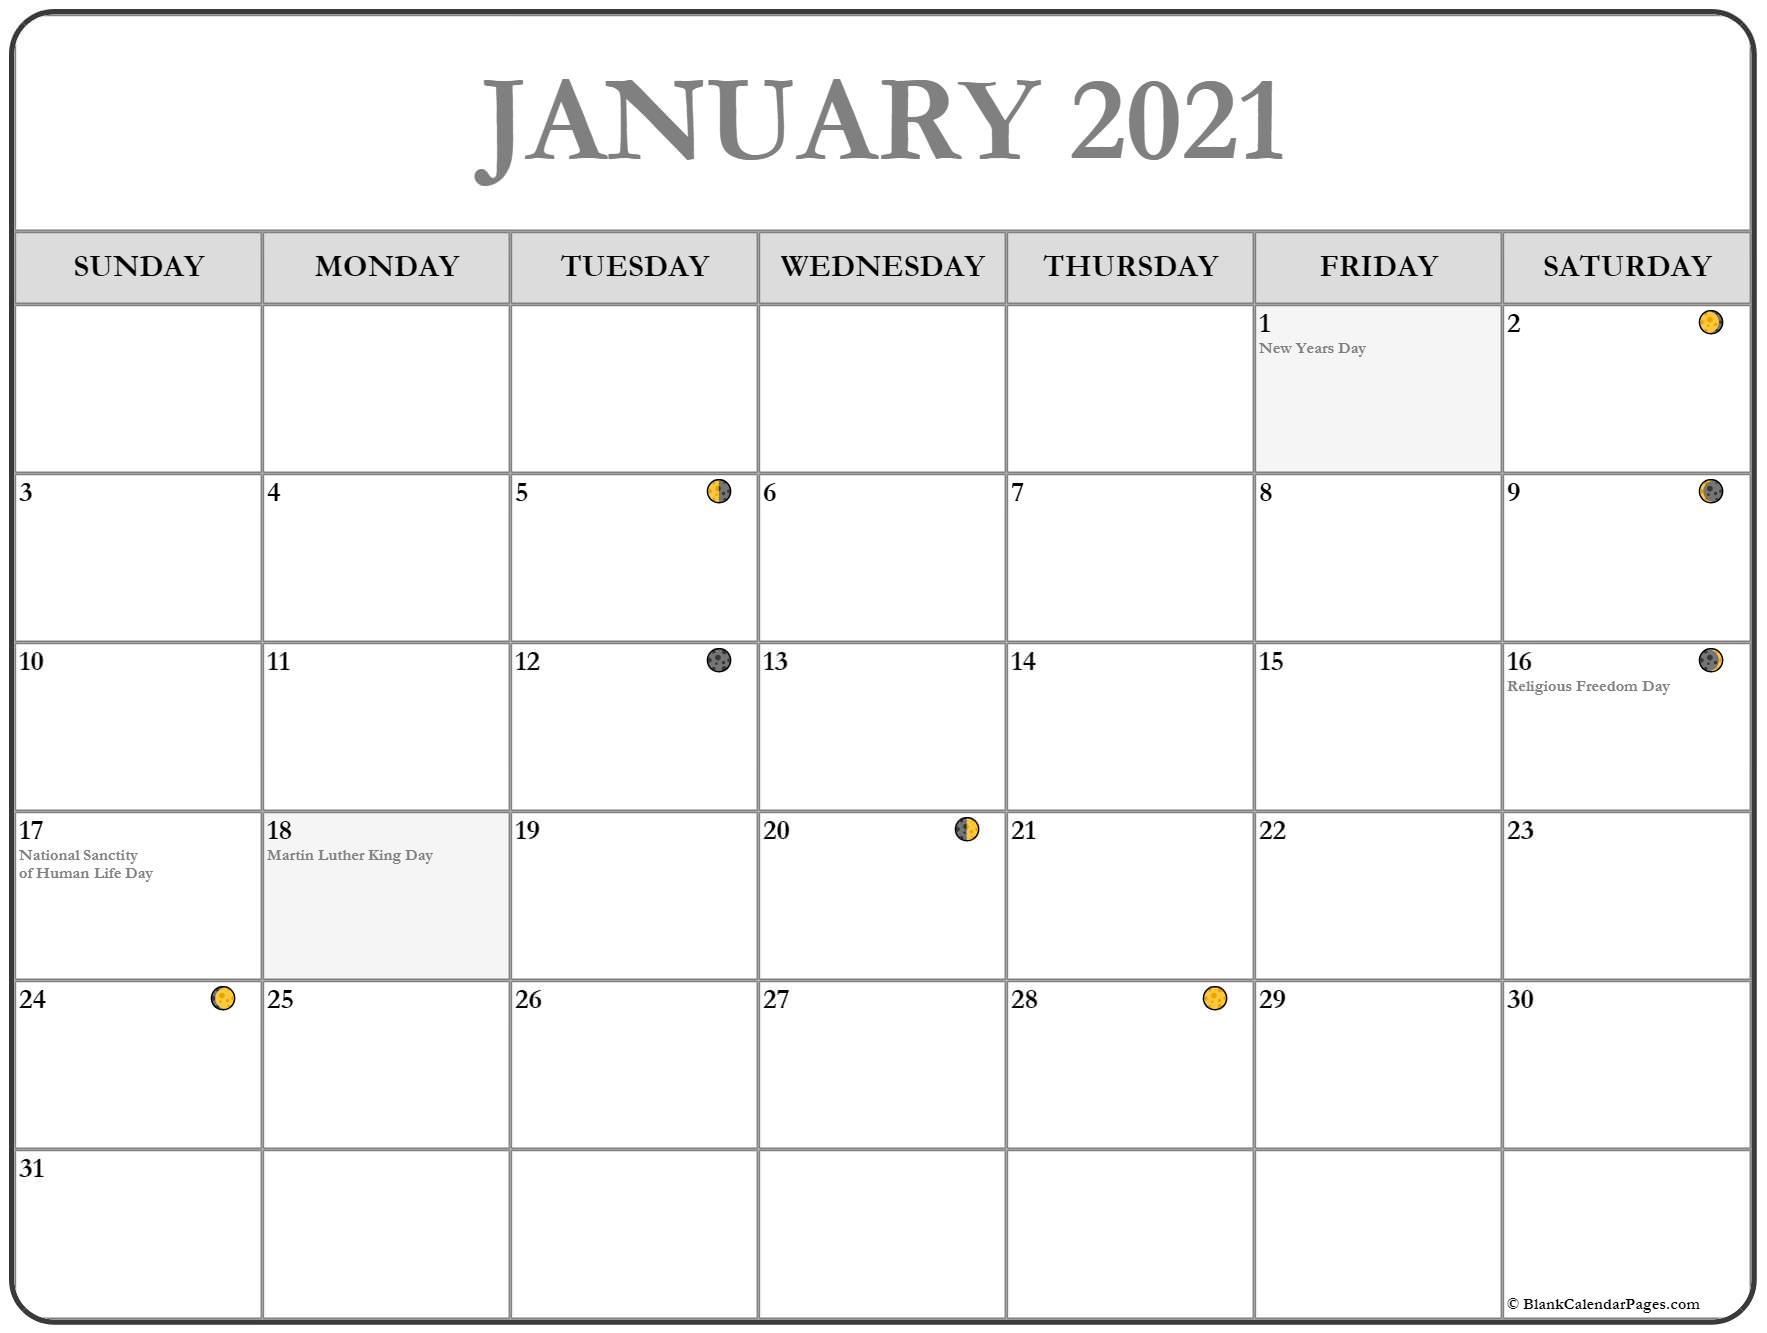 january 2021 lunar calendar moon phase calendar